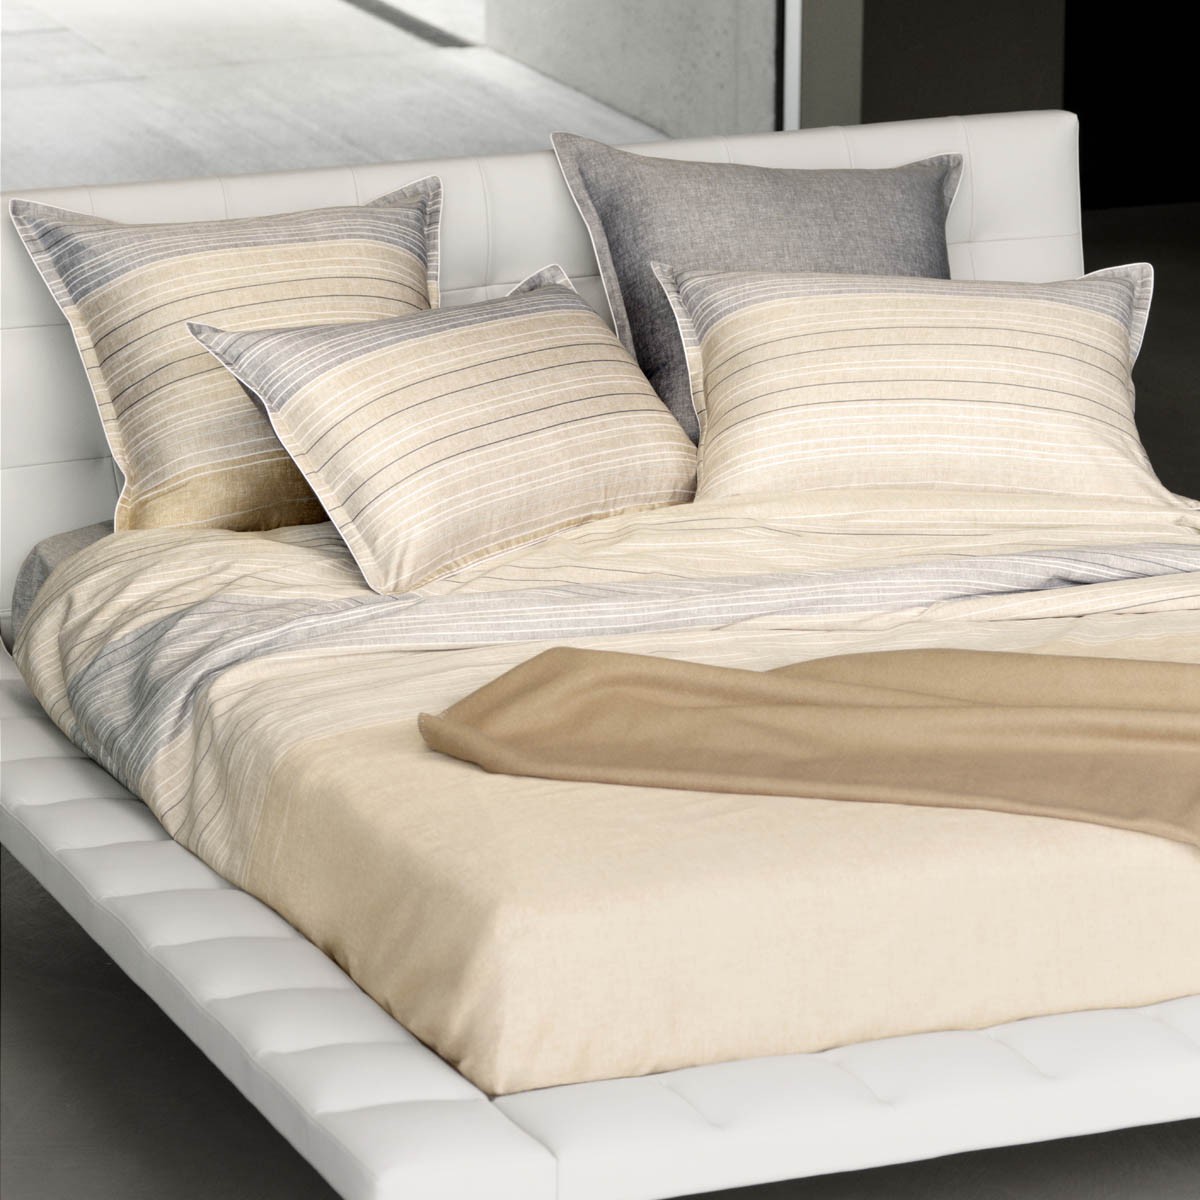 Bed Linen Desert Vibes Multicoloured